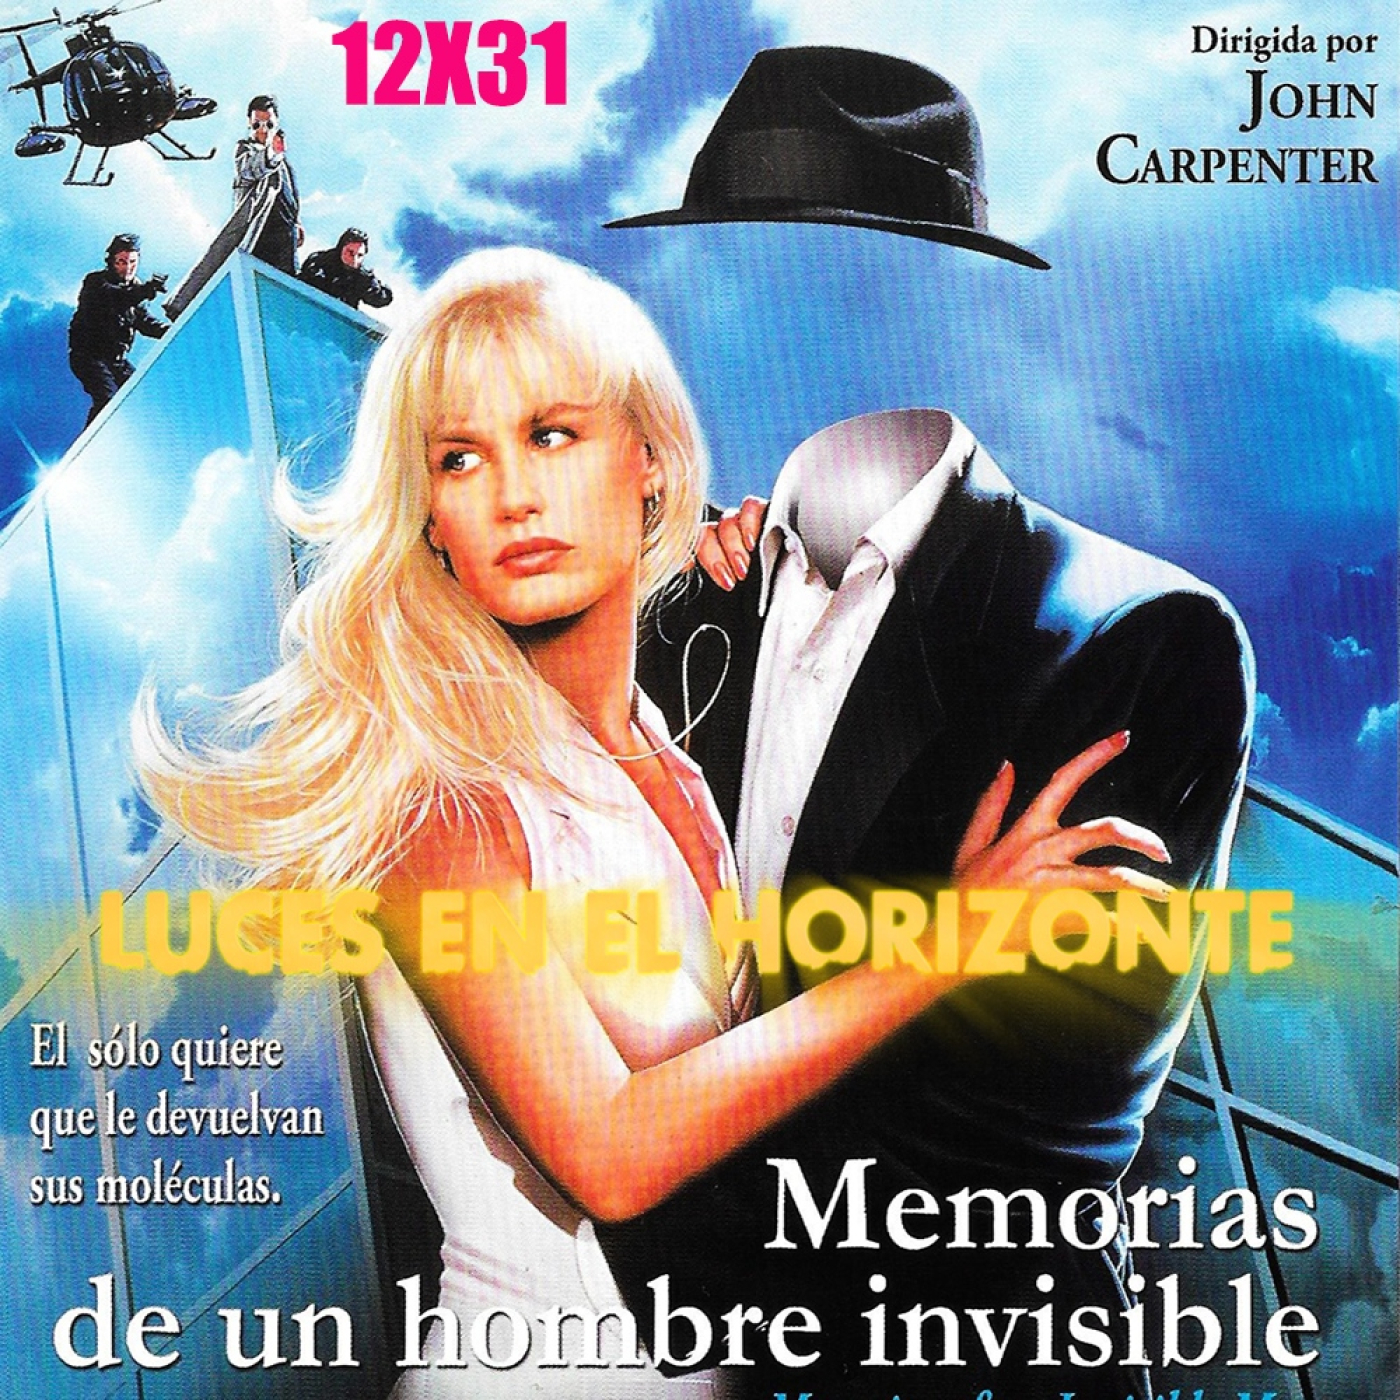 Memorias de un hombre invisible - Luces en el Horizonte 12X31 - Episodio exclusivo para mecenas